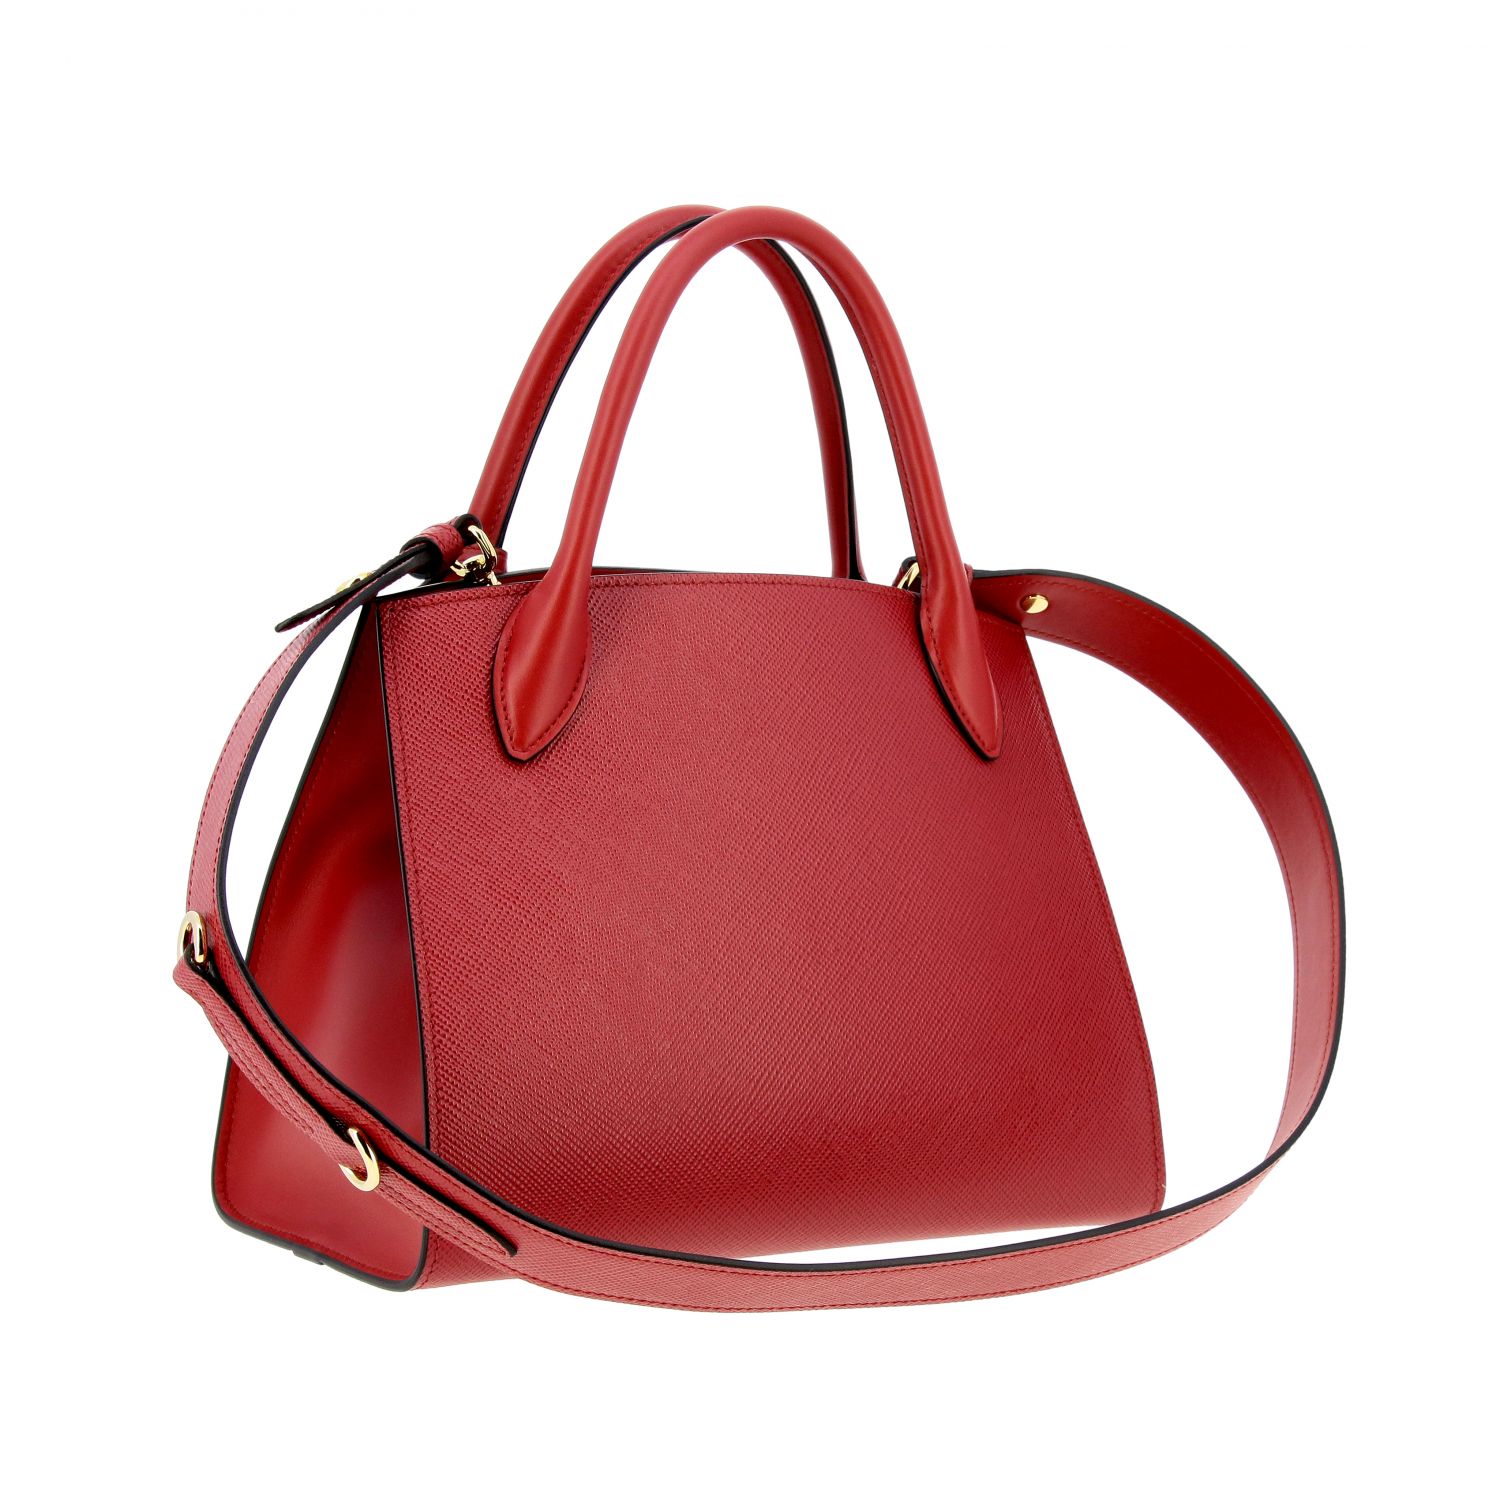 Handtasche Prada: Monochrome Tasche in Saffiano Leder Prada-Logo rot 3